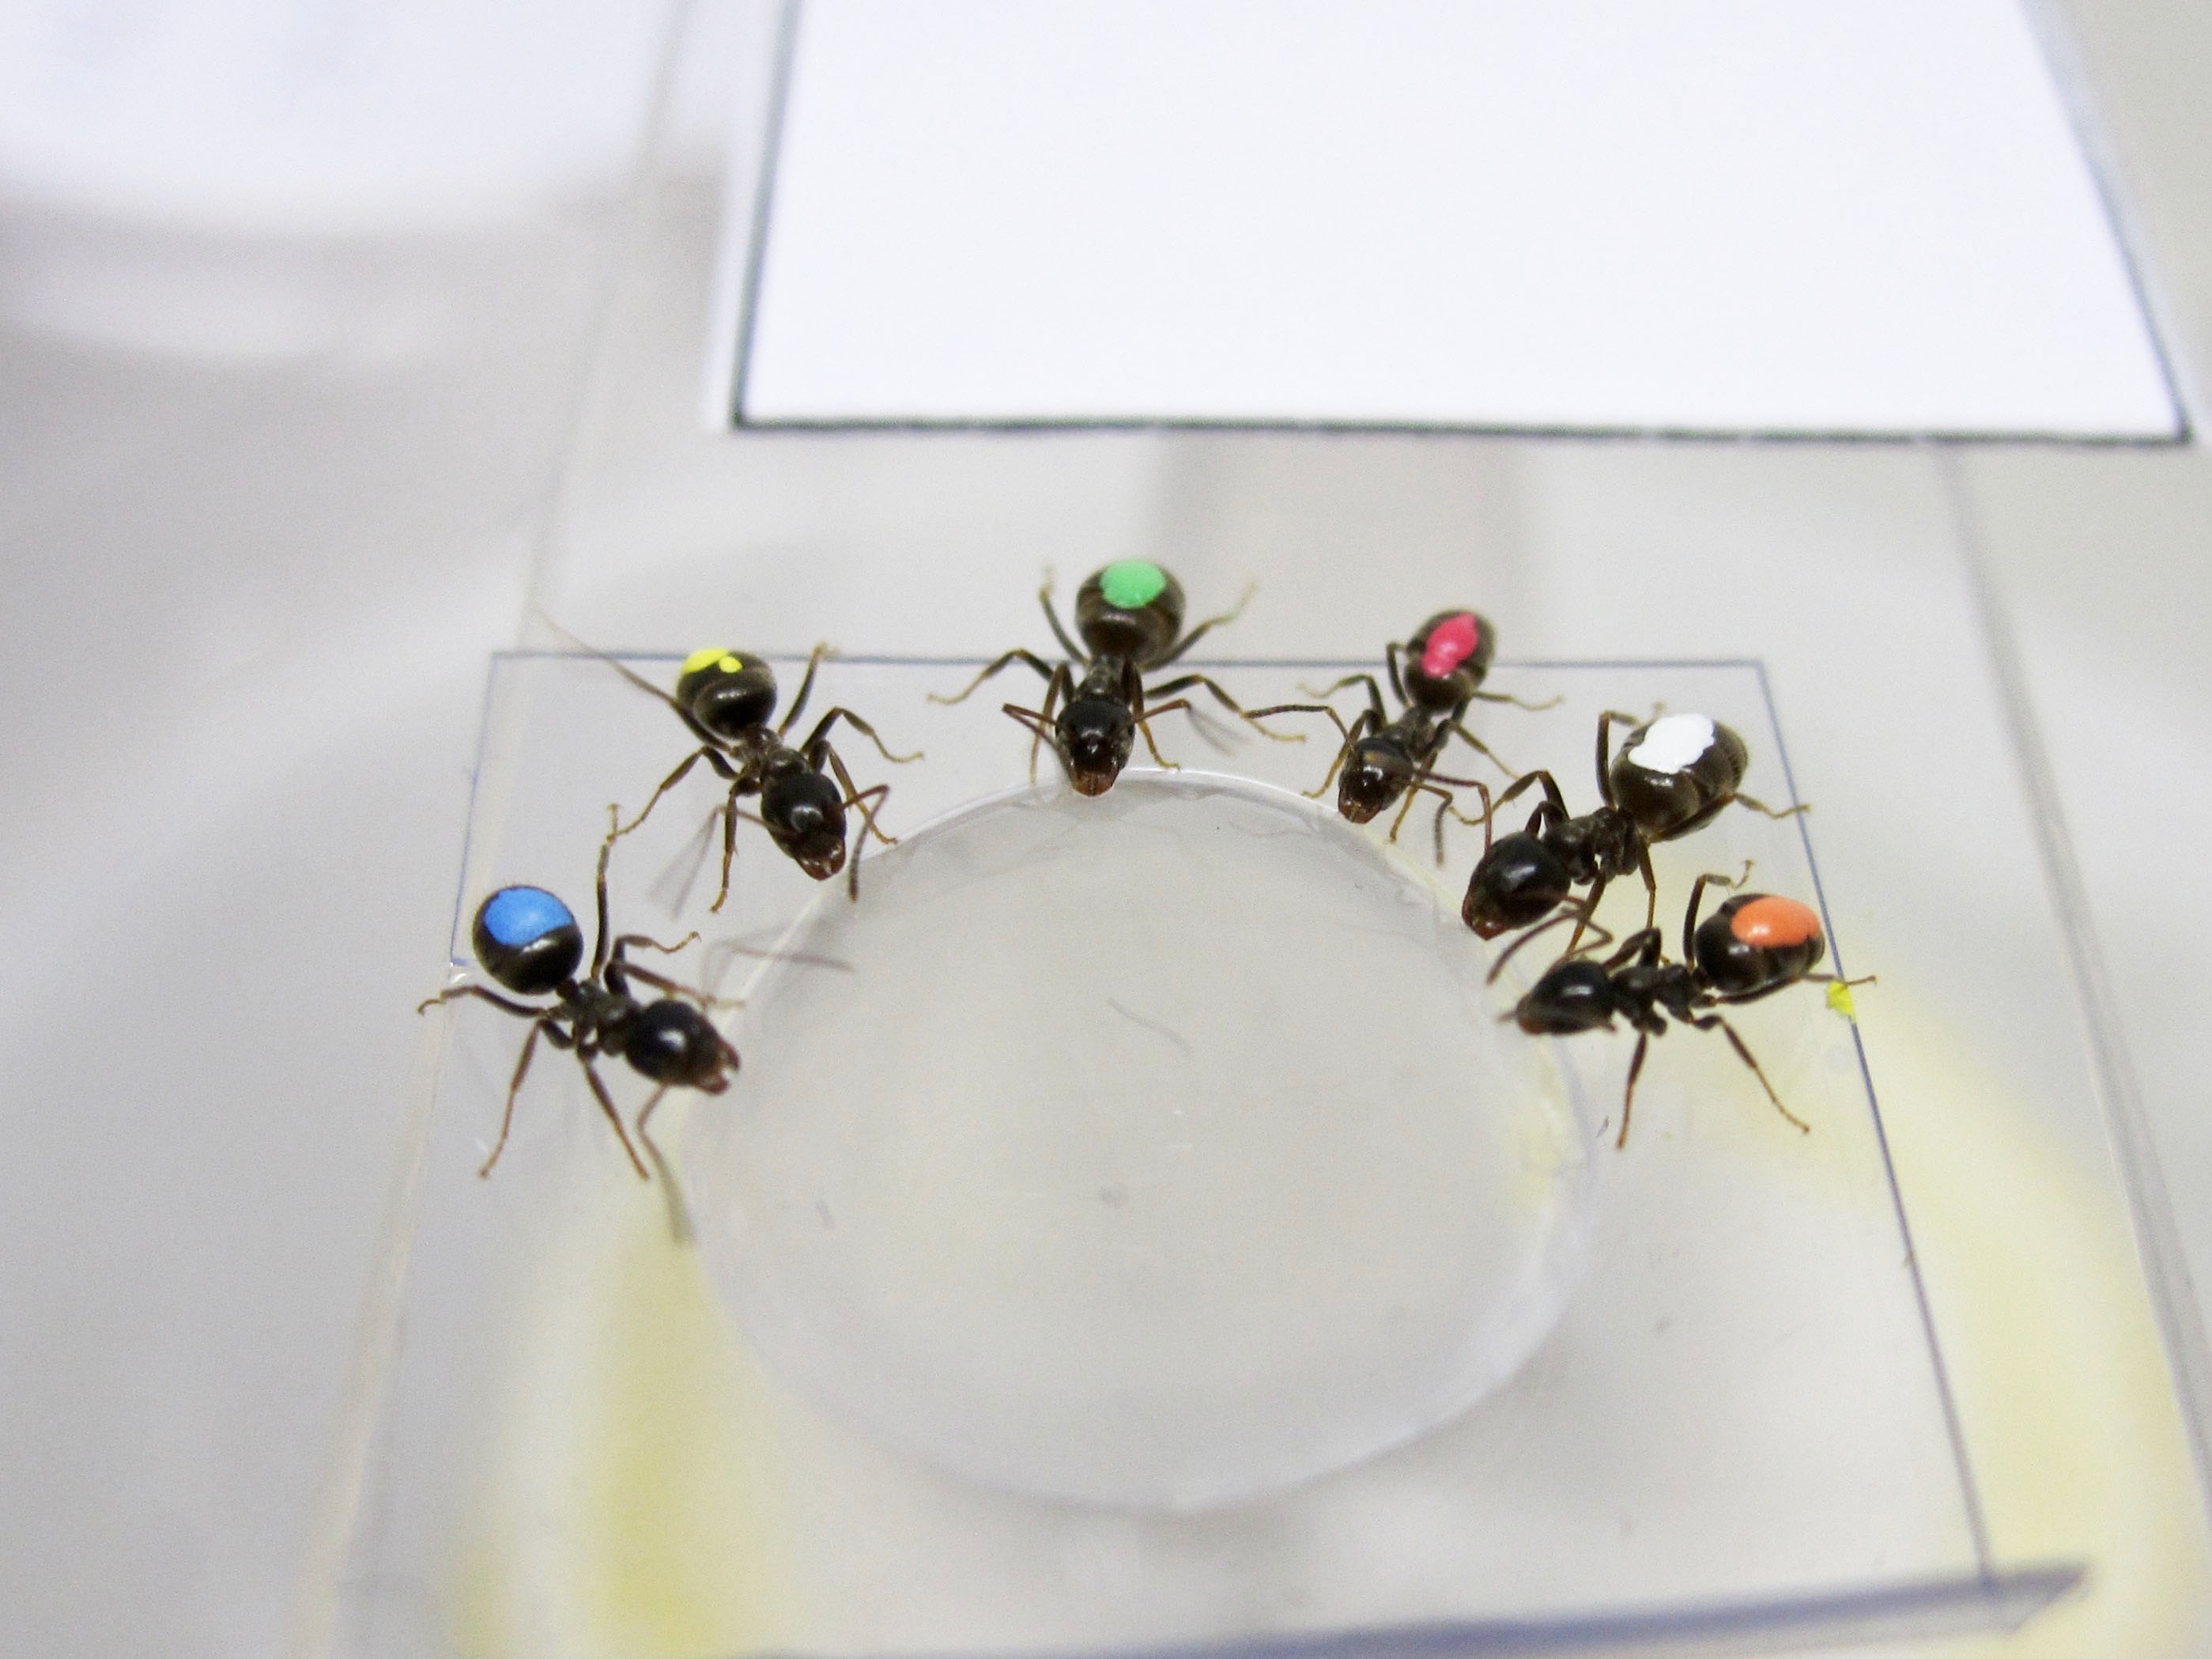 Las hormigas del experimento probando la comida facilitada por los investigadores. Crédito: A. Koch